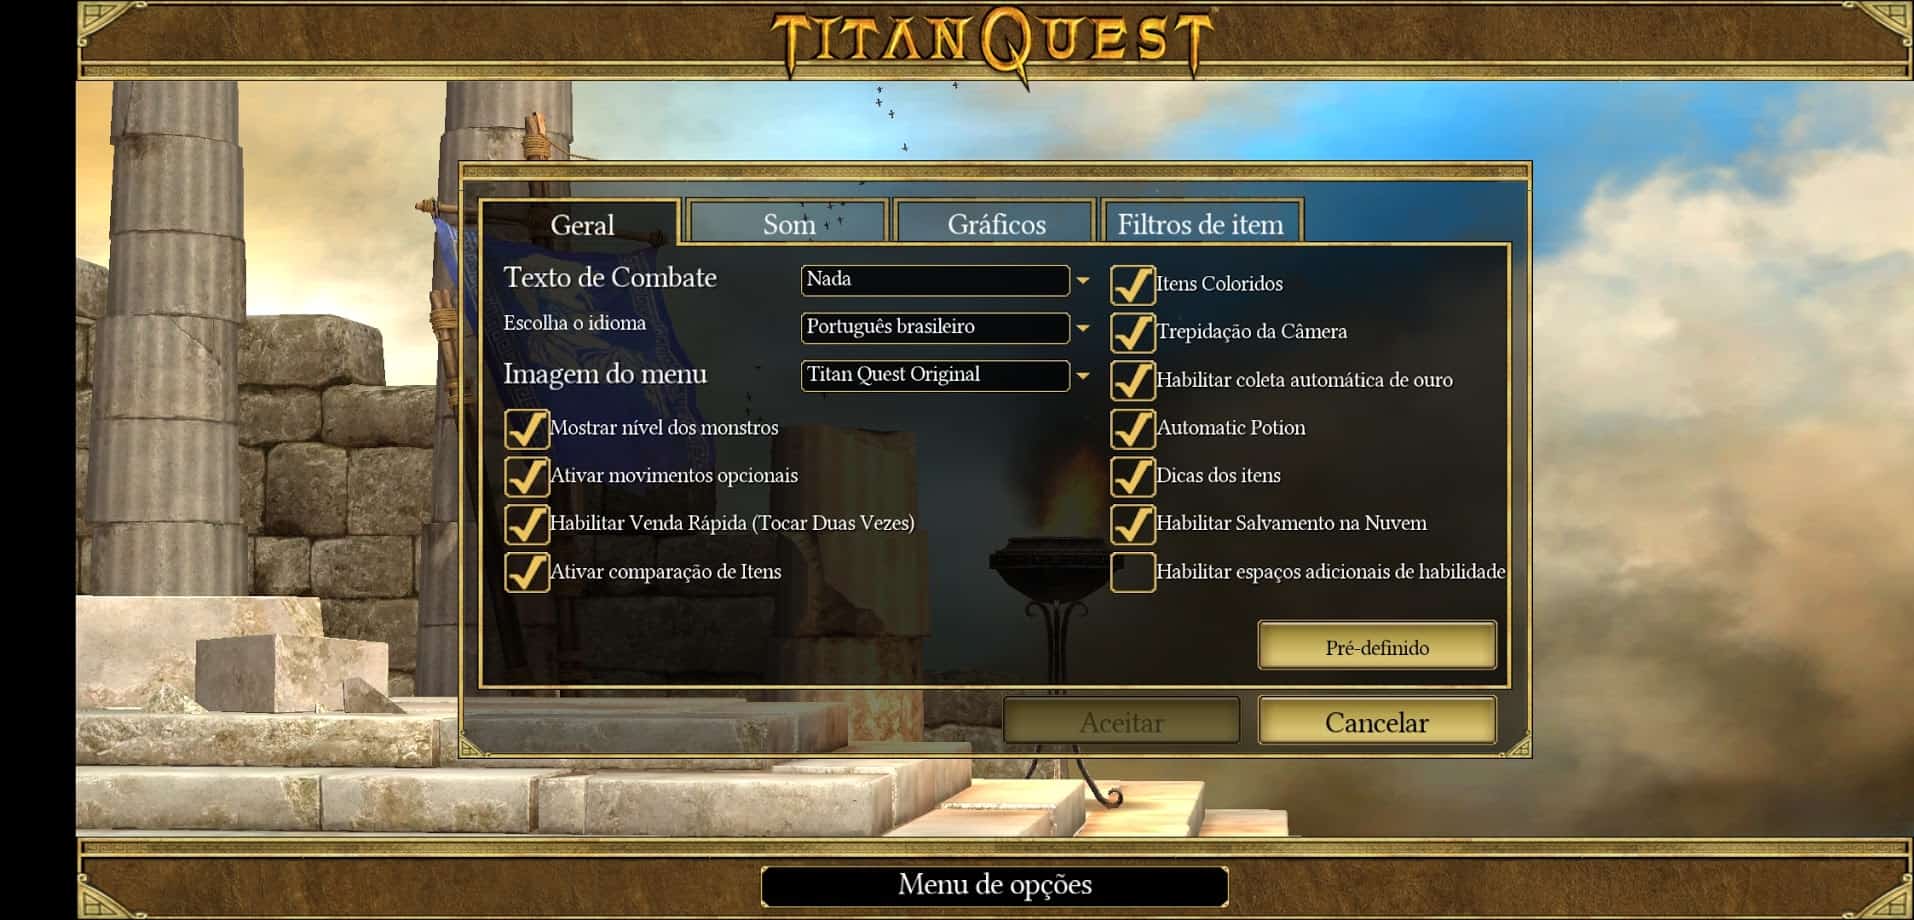 titan-quest-traducao Titan Quest original vira "Legendary Edition" de graça com o Google Play Pass